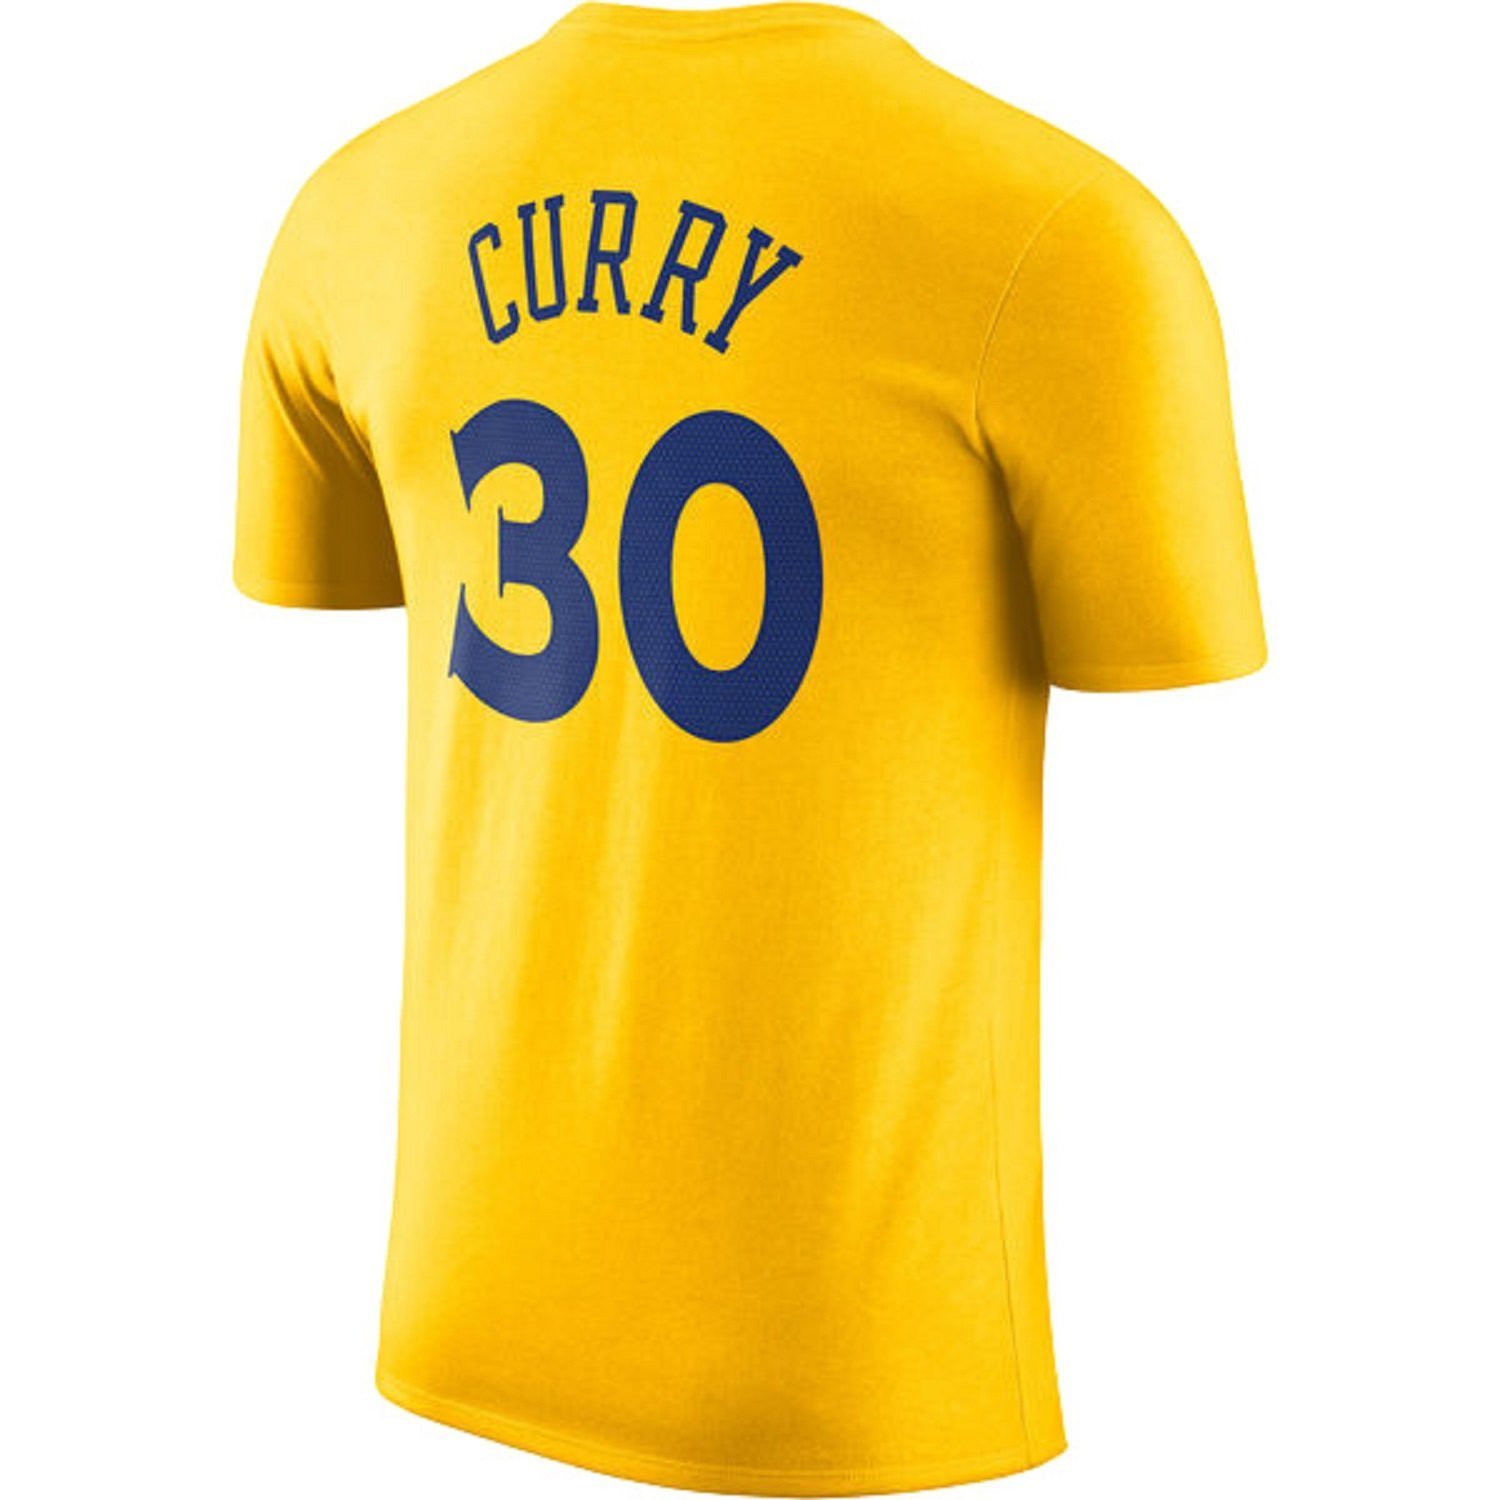 stephen curry t shirt jersey